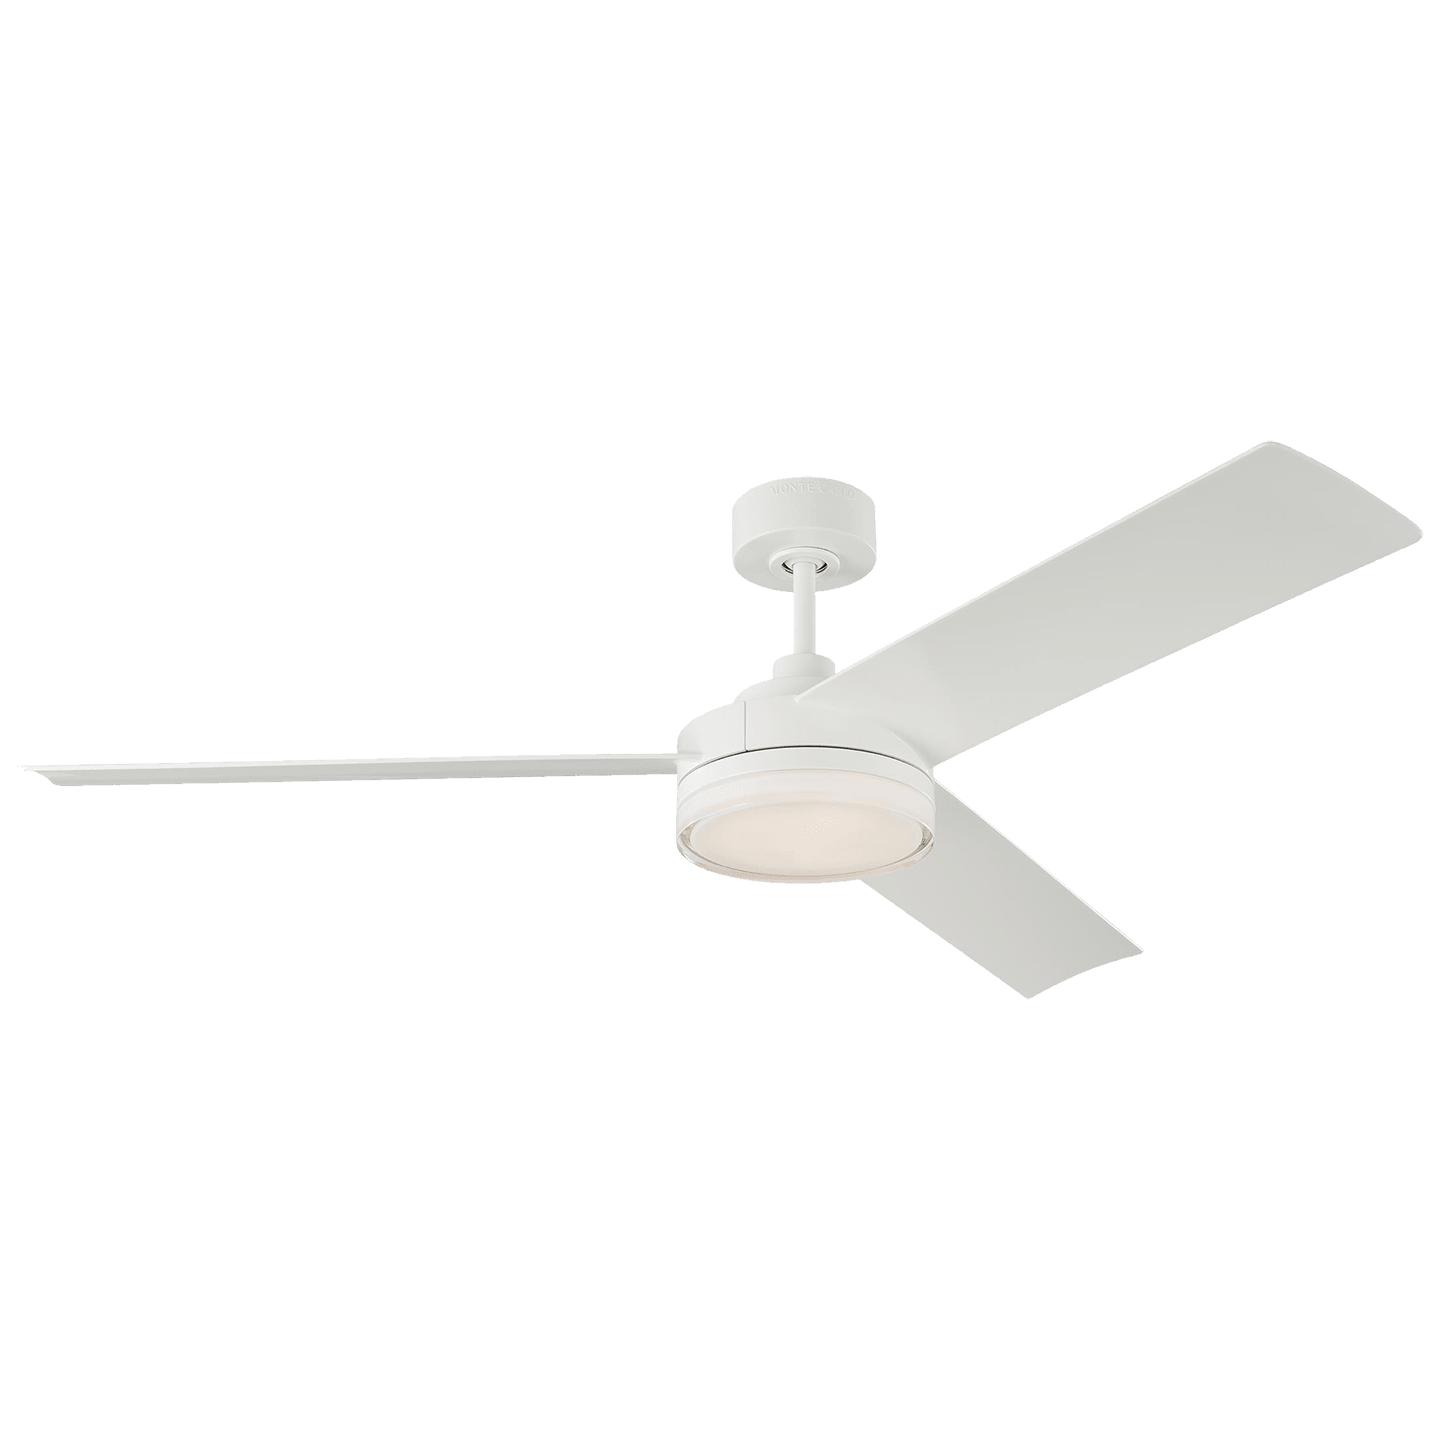 Купить Потолочный вентилятор Cirque 56" LED Ceiling Fan в интернет-магазине roooms.ru